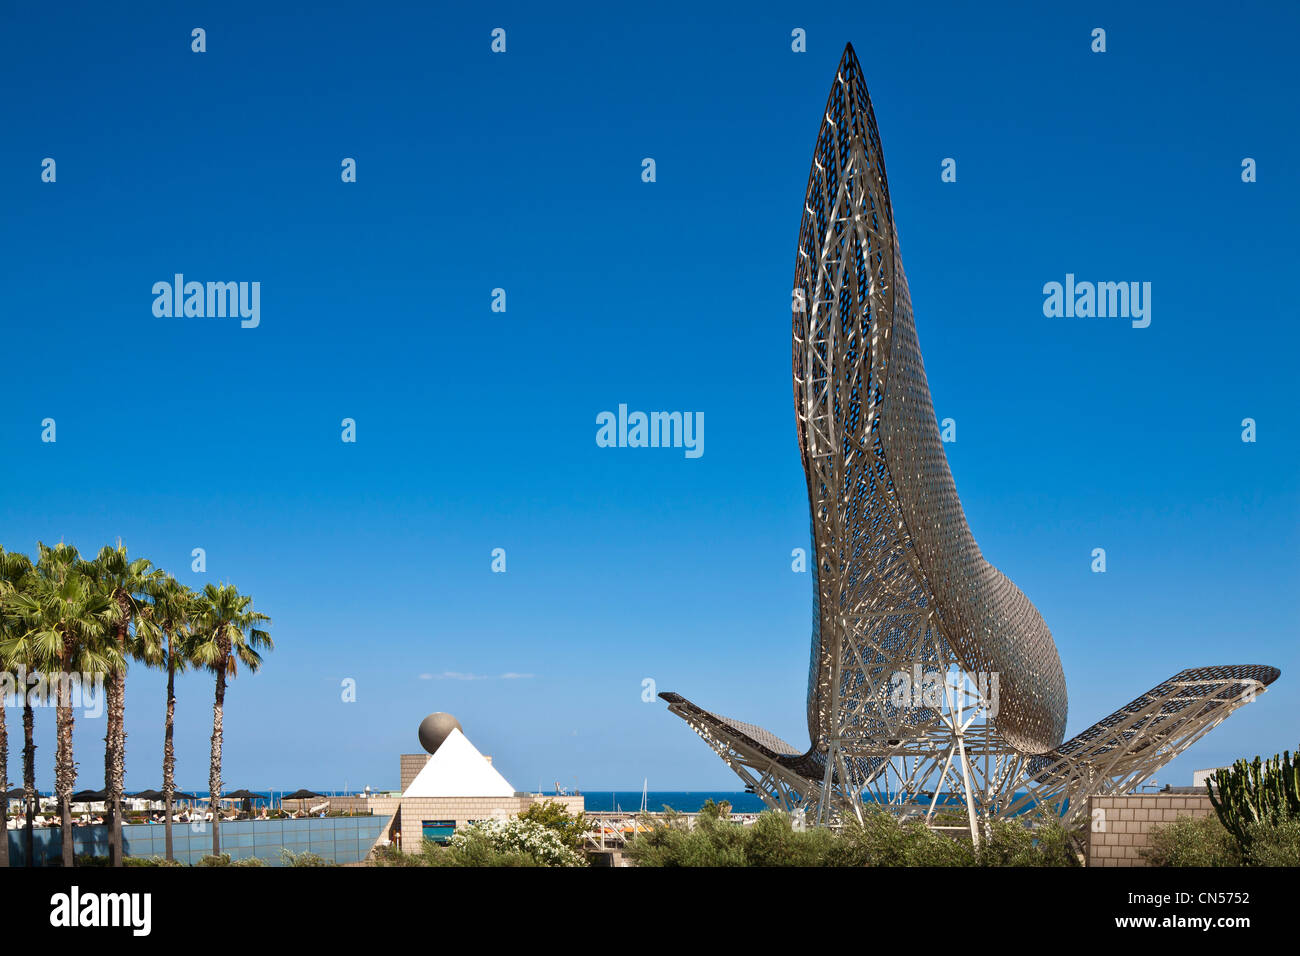 Spanien, Cataluna, Barcelona, Peix oder Balena (Wal)-Skulptur von der kanadischen amerikanische Architekt Frank Owen Gehry, Blick von der Stockfoto